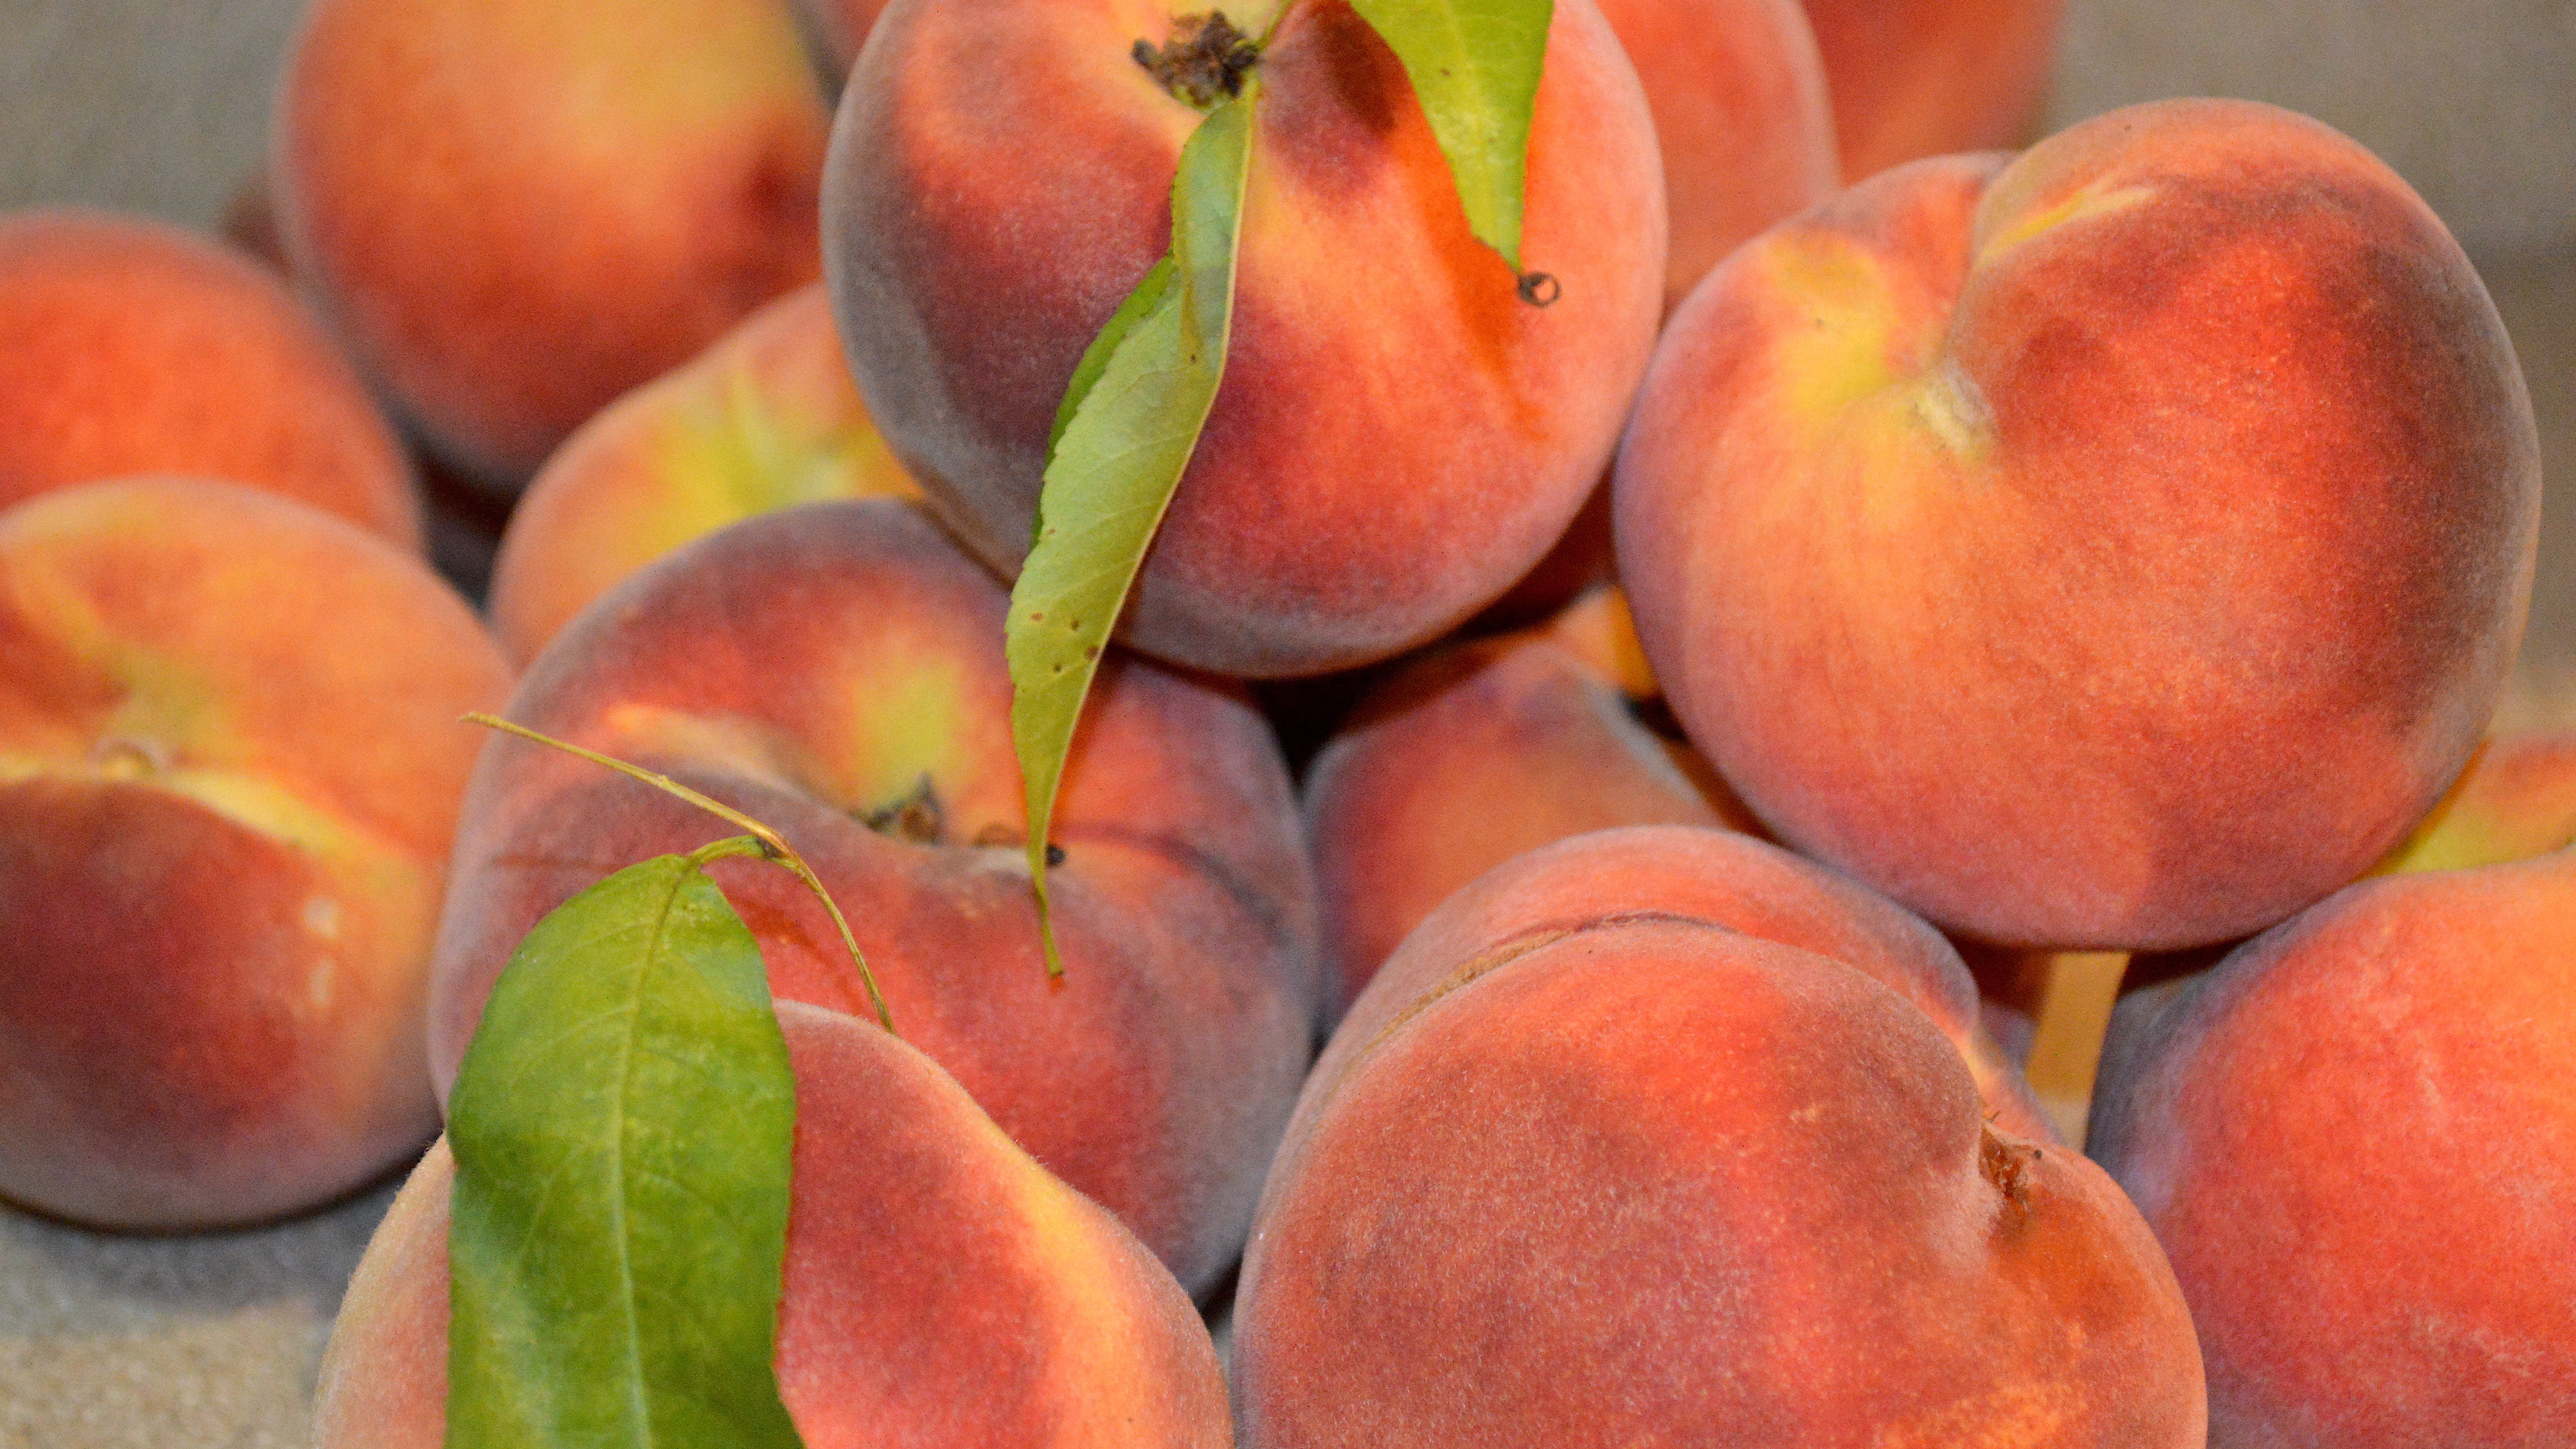 Summer Peaches